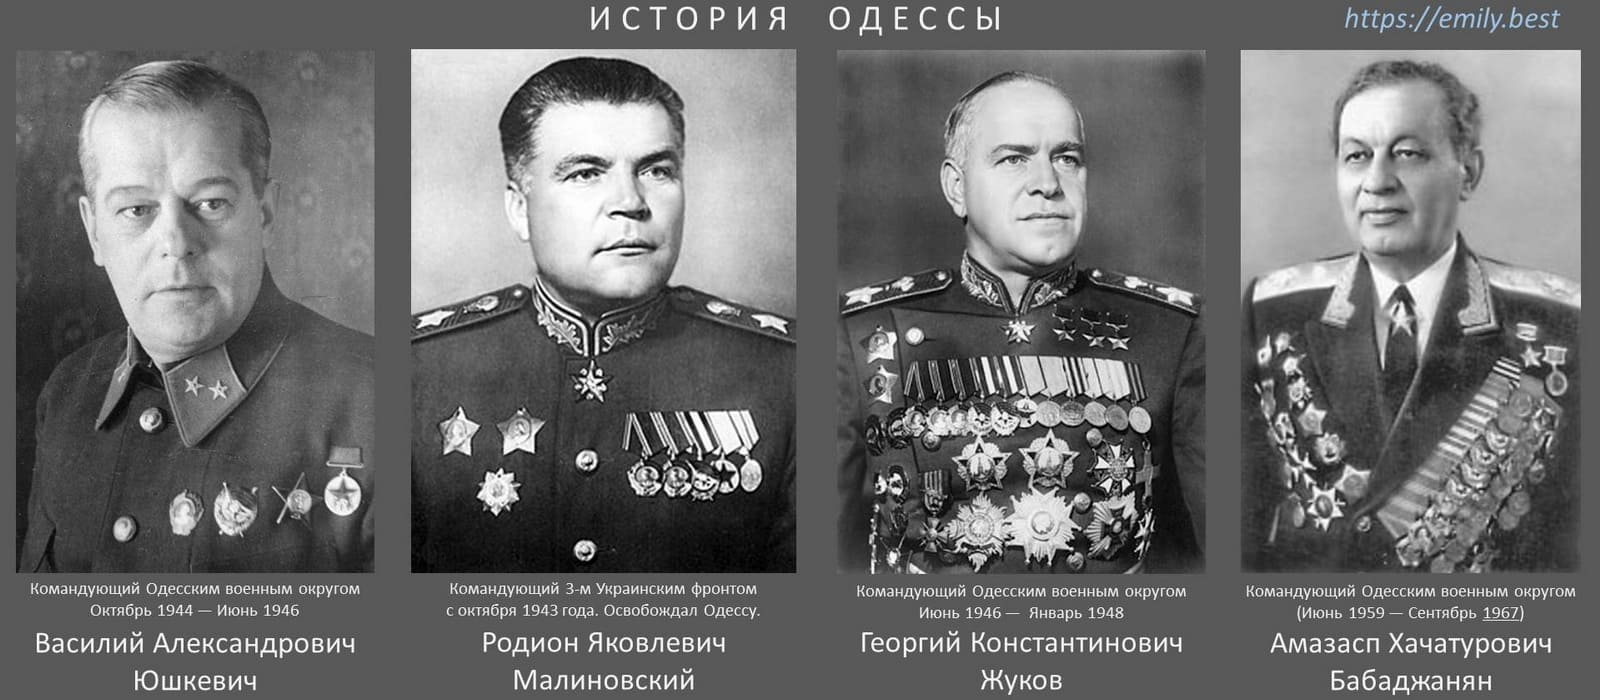 История Одессы - Маршалы служившие в Одессе